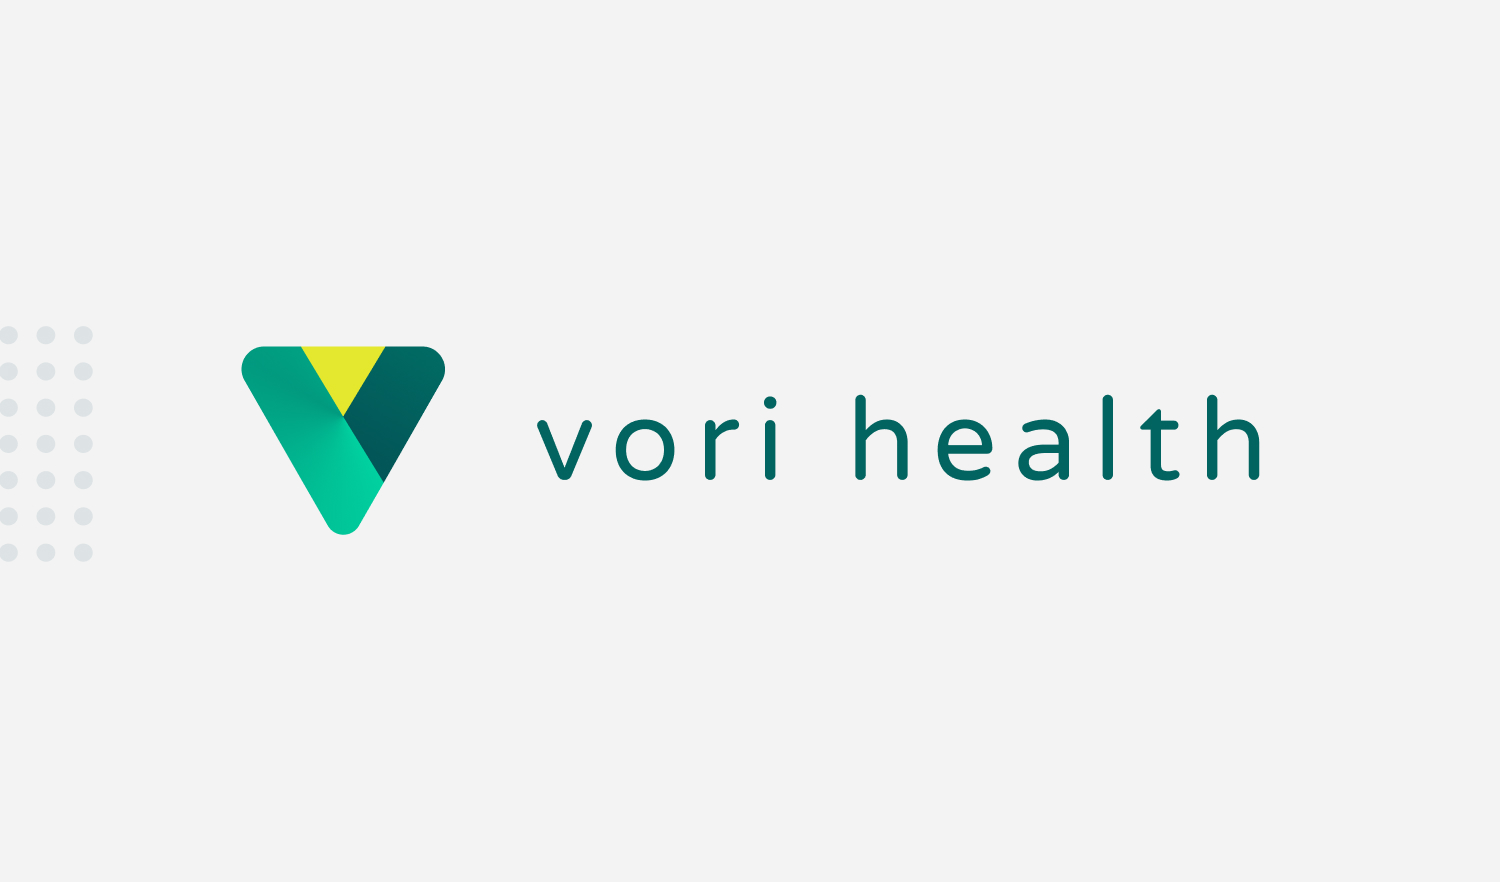 Echo Vori Health